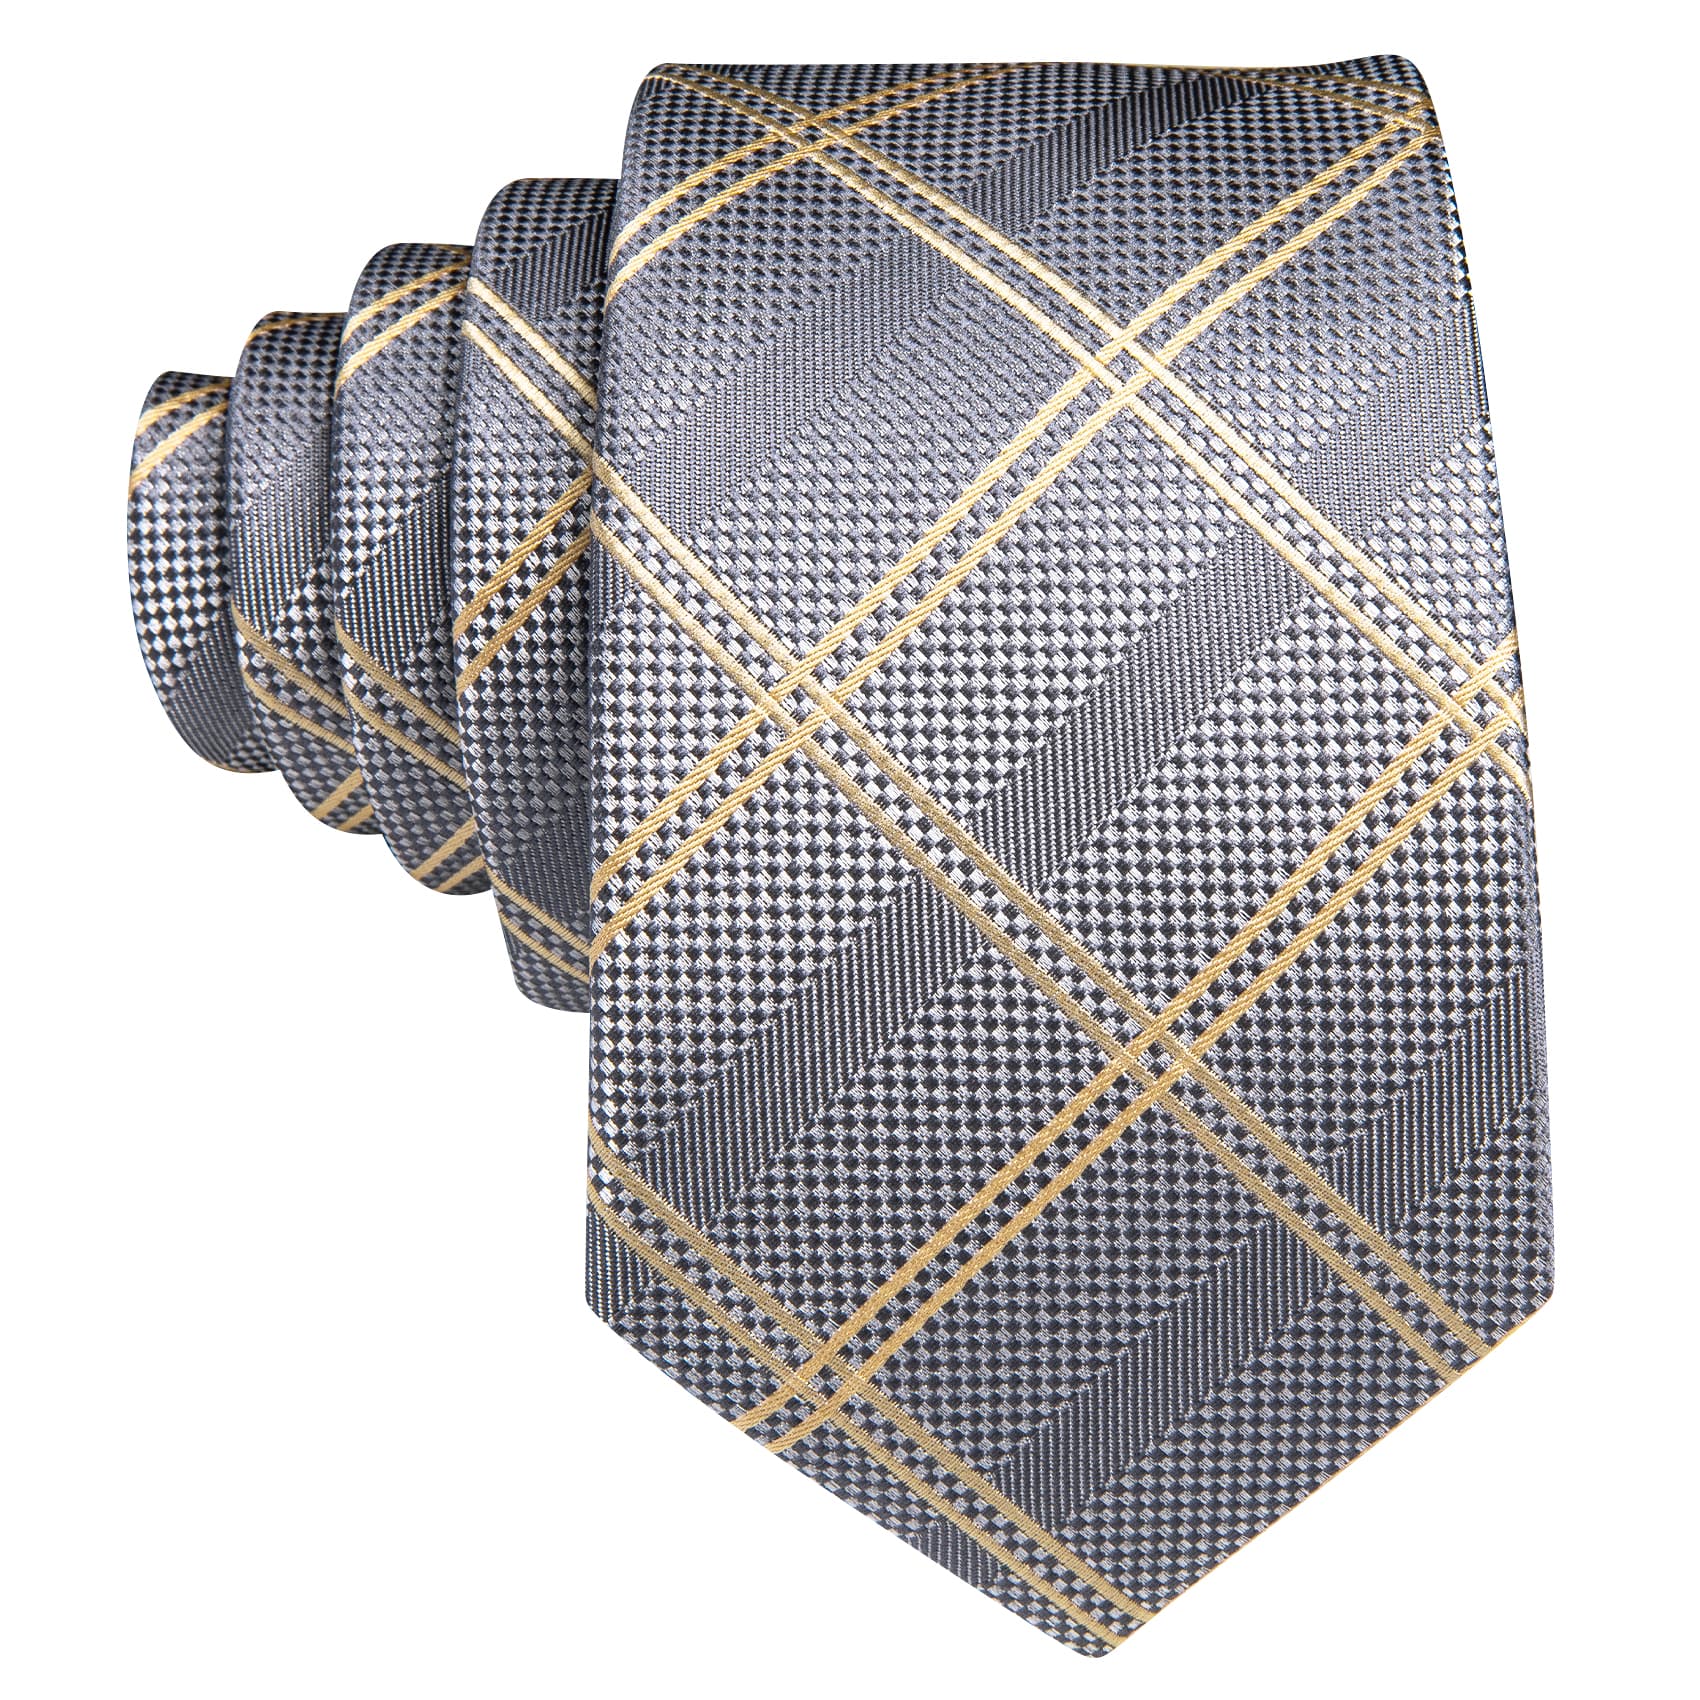  Mens Grey Plaid Tie Beige Checkered Necktie Set